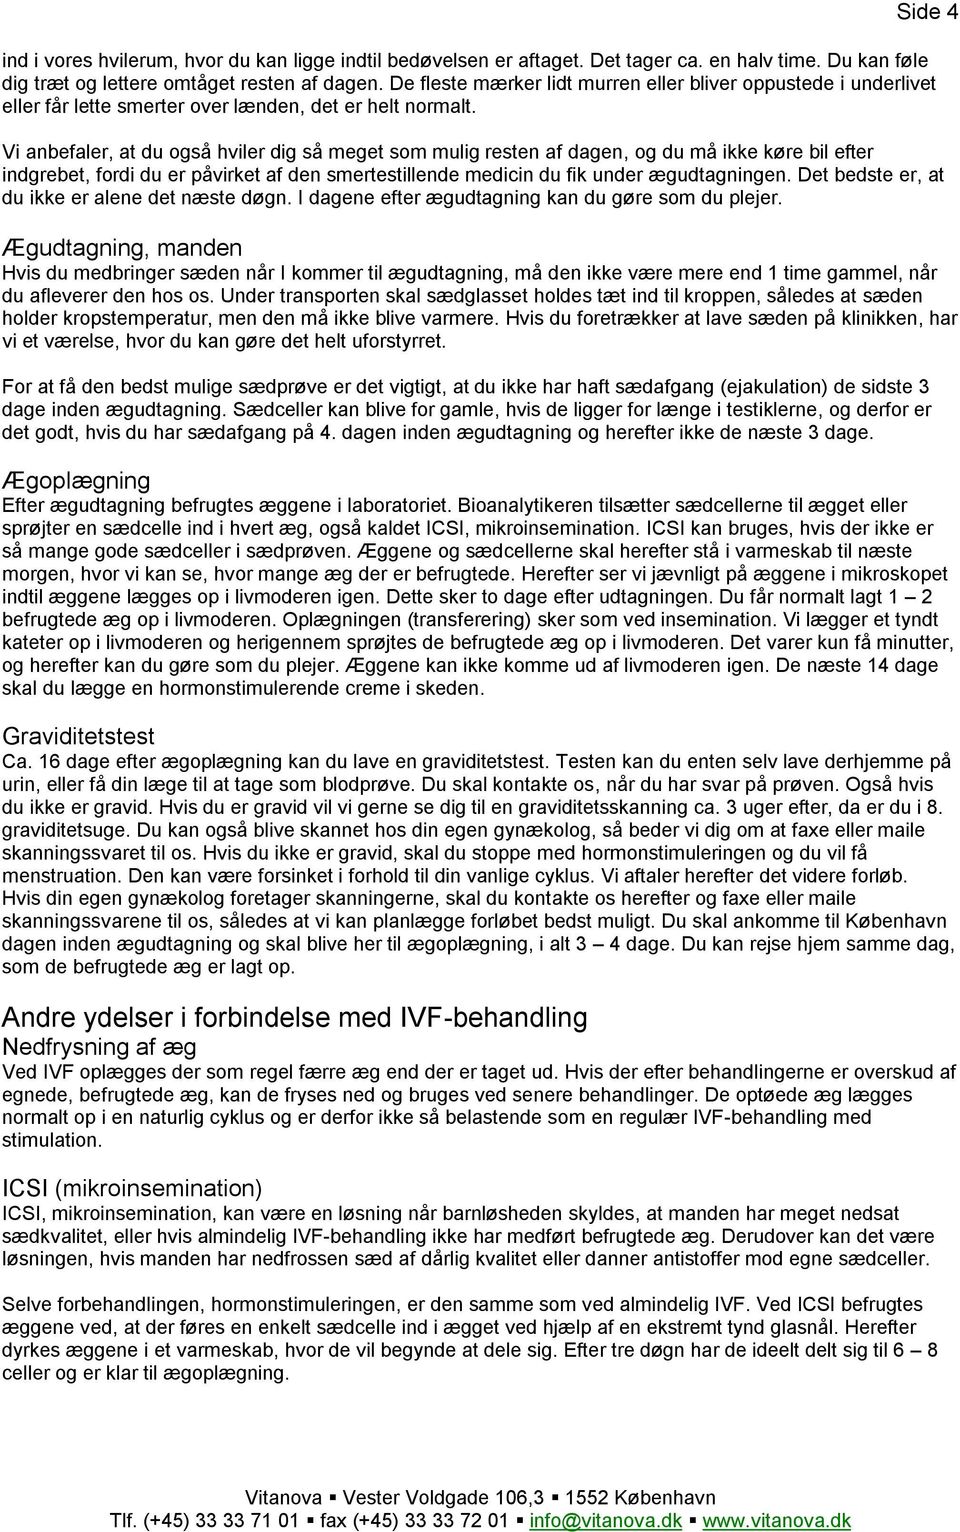 Information om IVF. Vester Voldgade 106, København Tlf.: - PDF ...